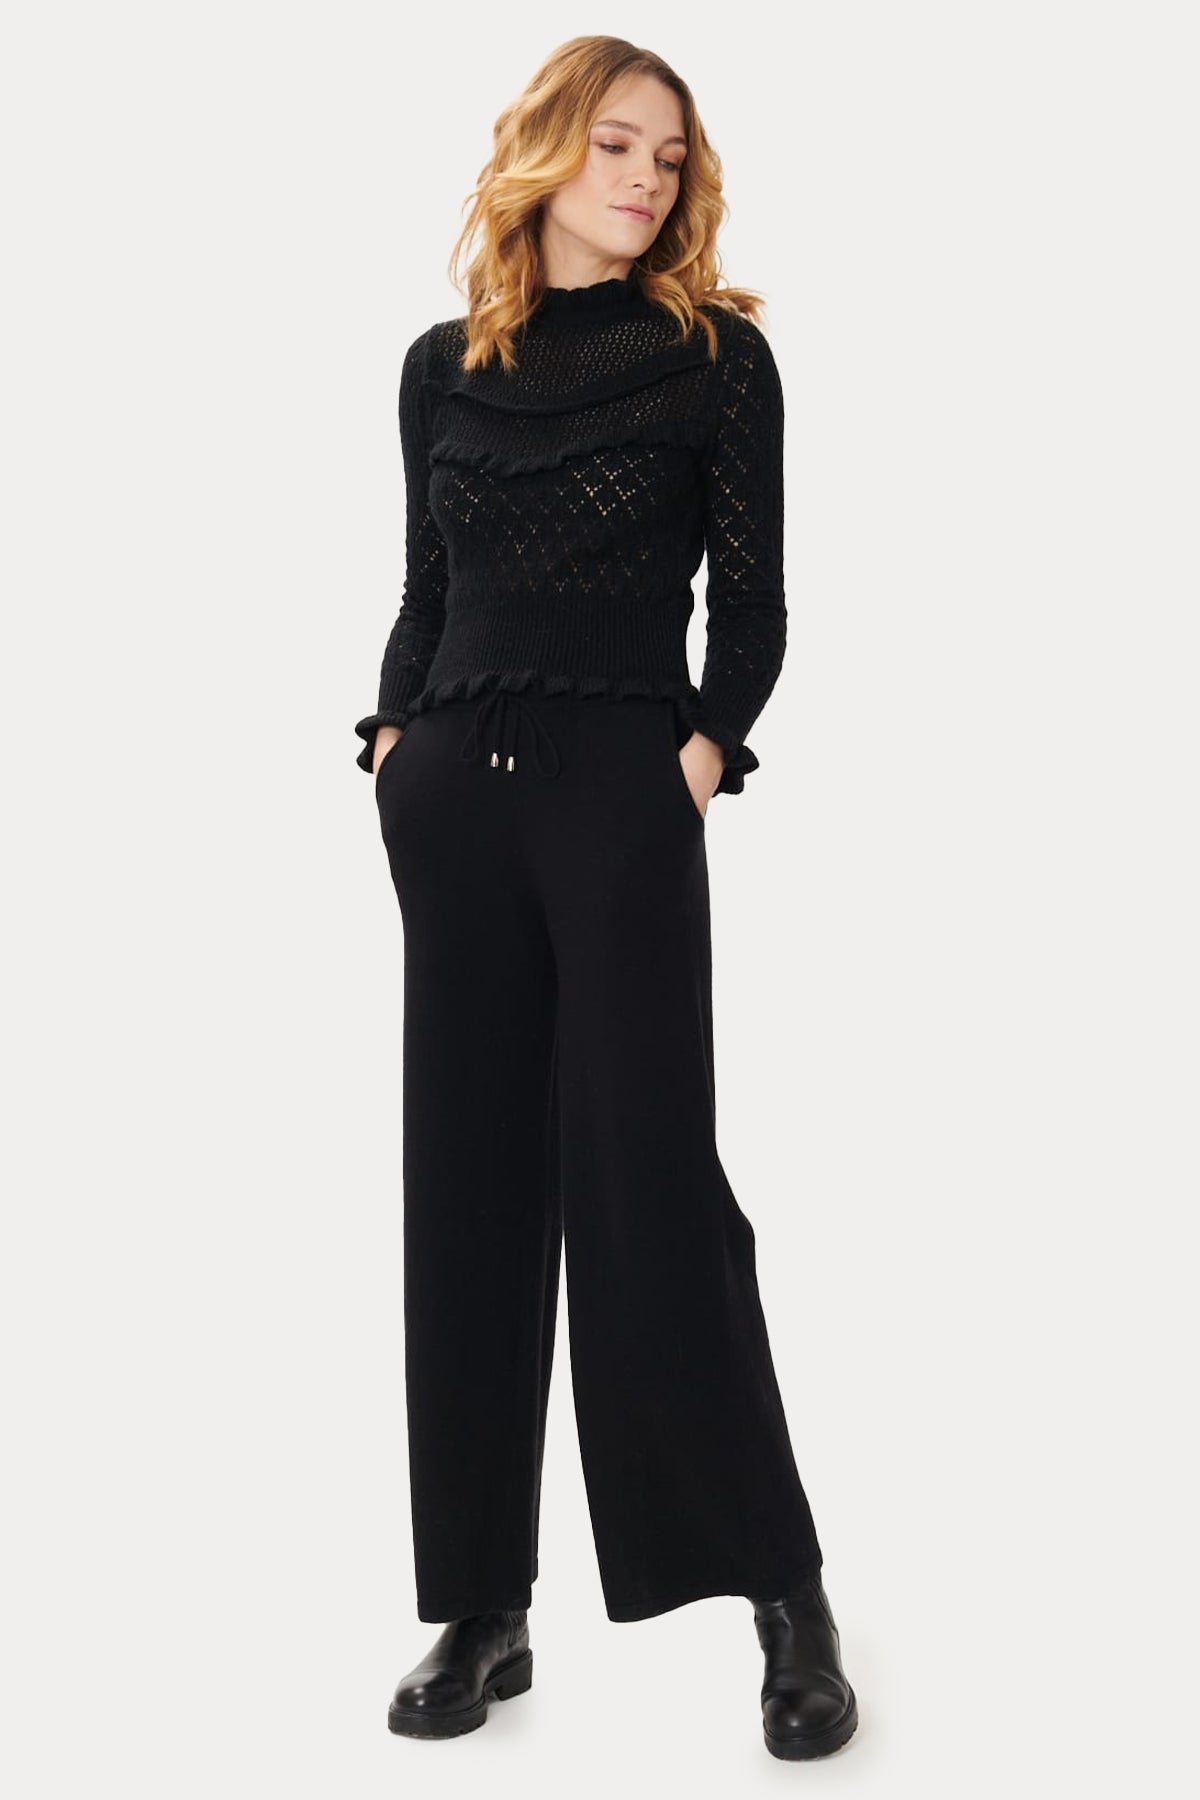 Rene Derhy Nastassia Beli Lastikli Örgü Pantolon-Libas Trendy Fashion Store